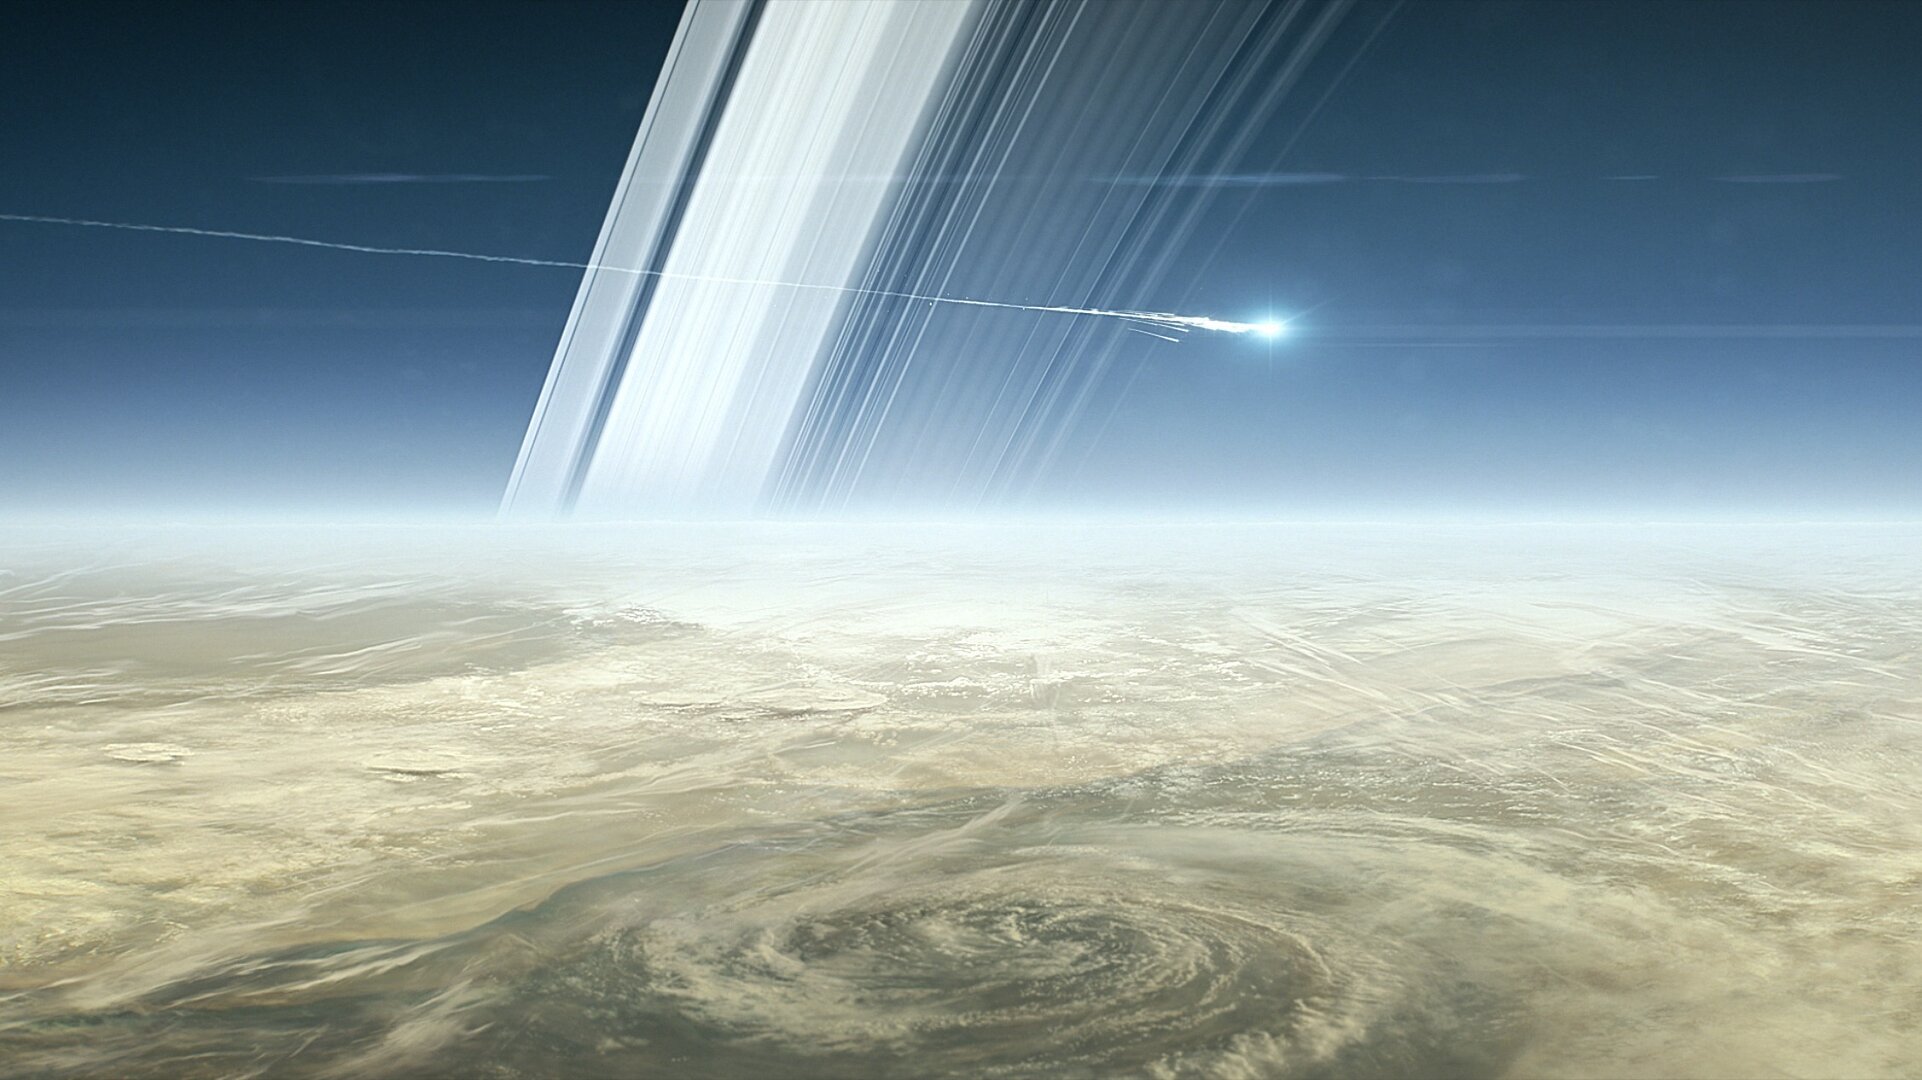 Cassini grand finale